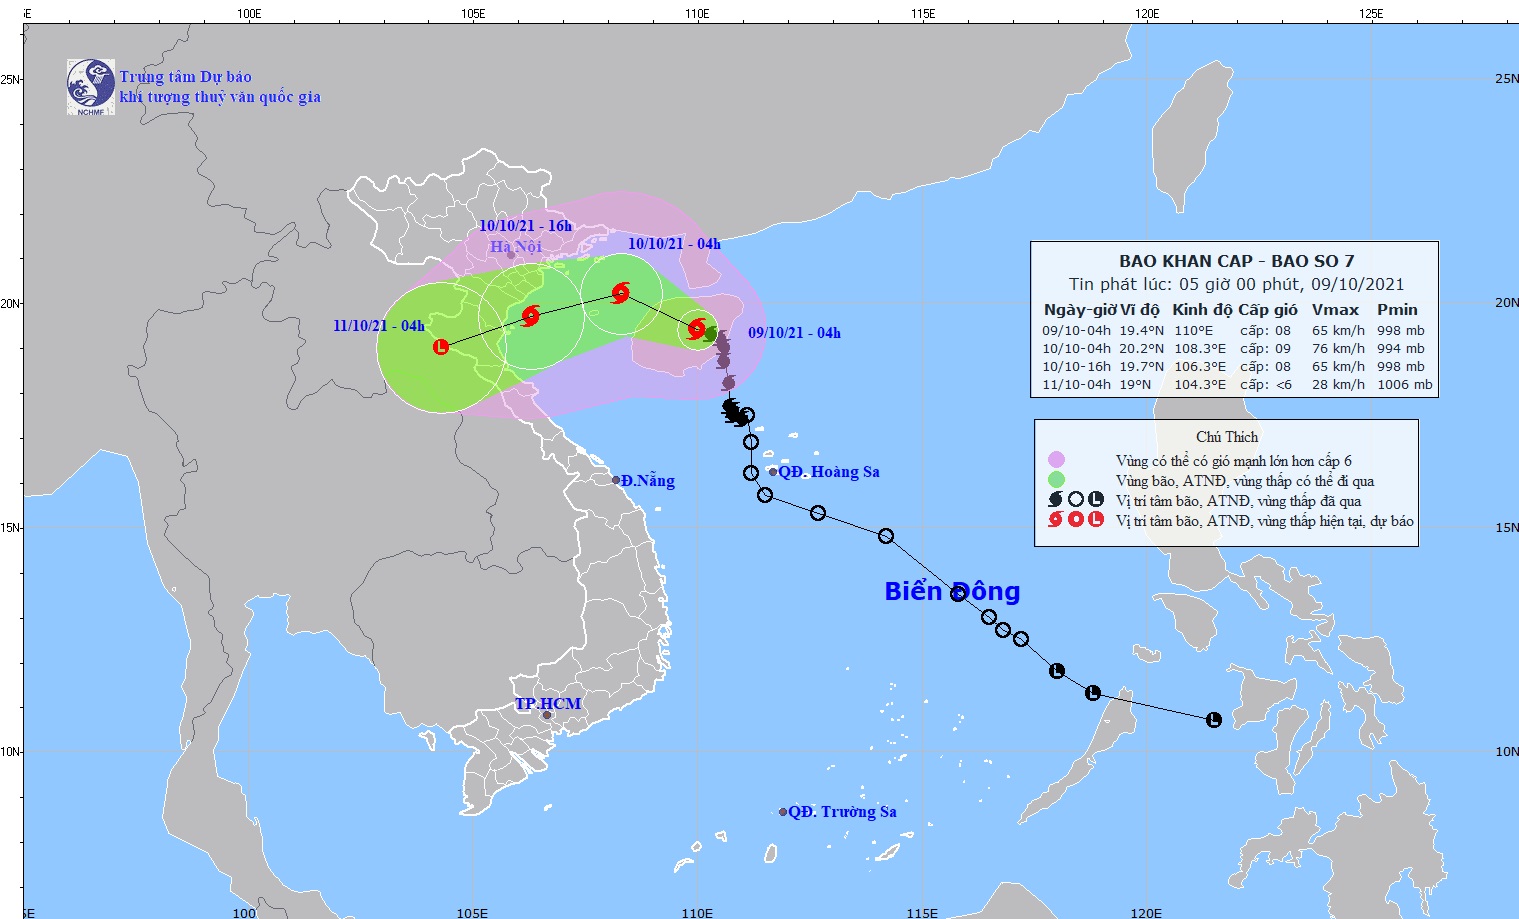 Vùng biển từ Hải Phòng đến Hà Tĩnh sẽ bị ảnh hưởng bởi bão số 7, gió giật cấp 10 - Ảnh: TTDBKTTVQG